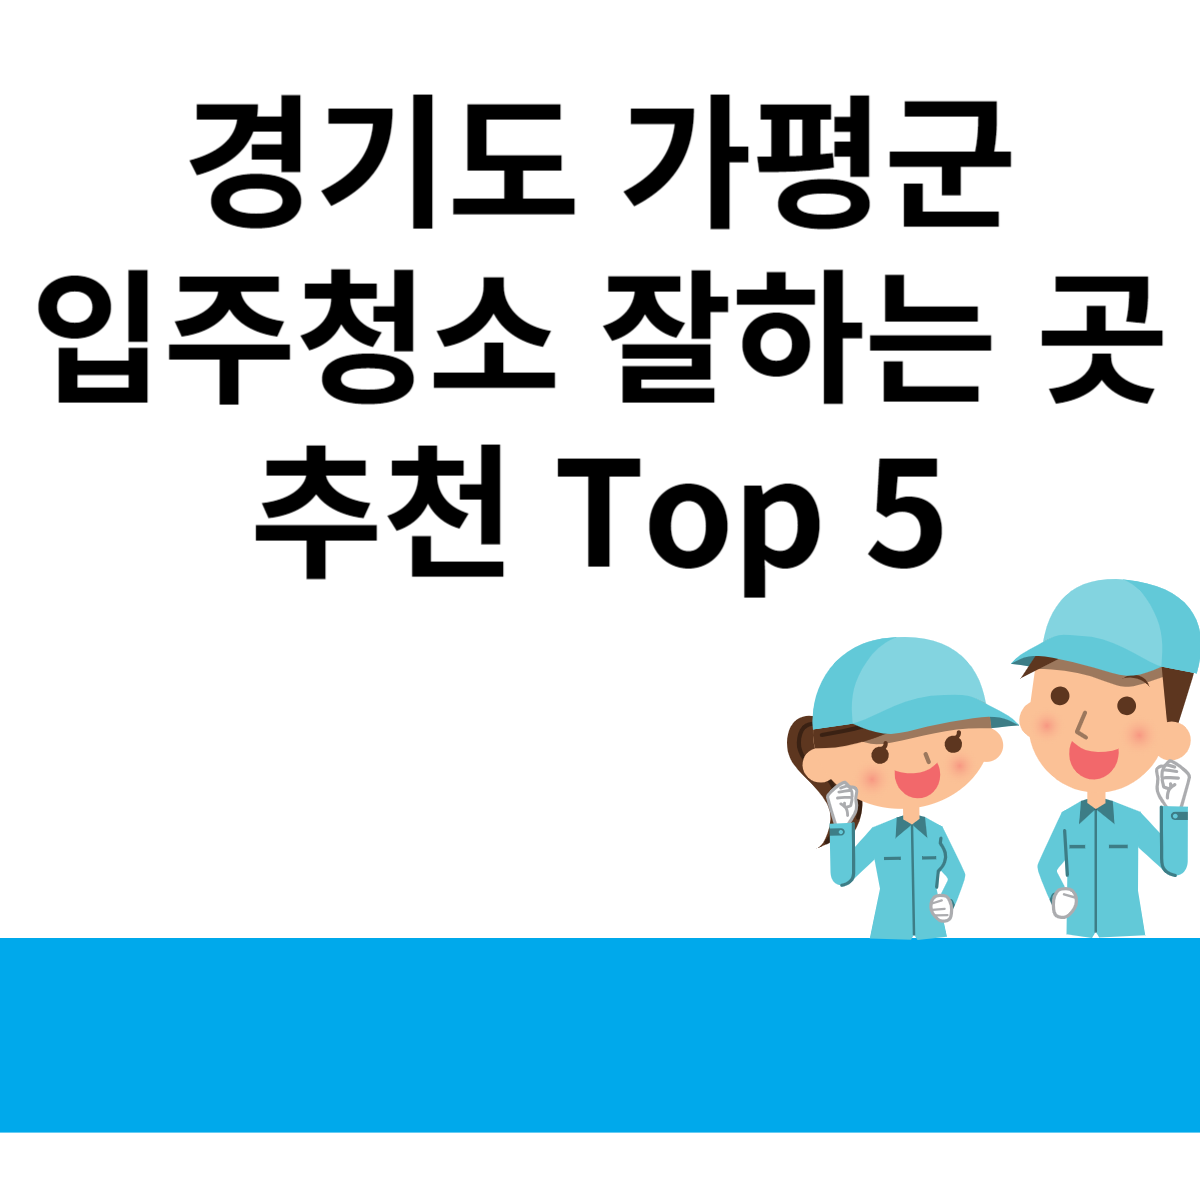 경기도 가평군 입주청소 잘하는 곳 추천 Top 5 블로그 썸내일 사진